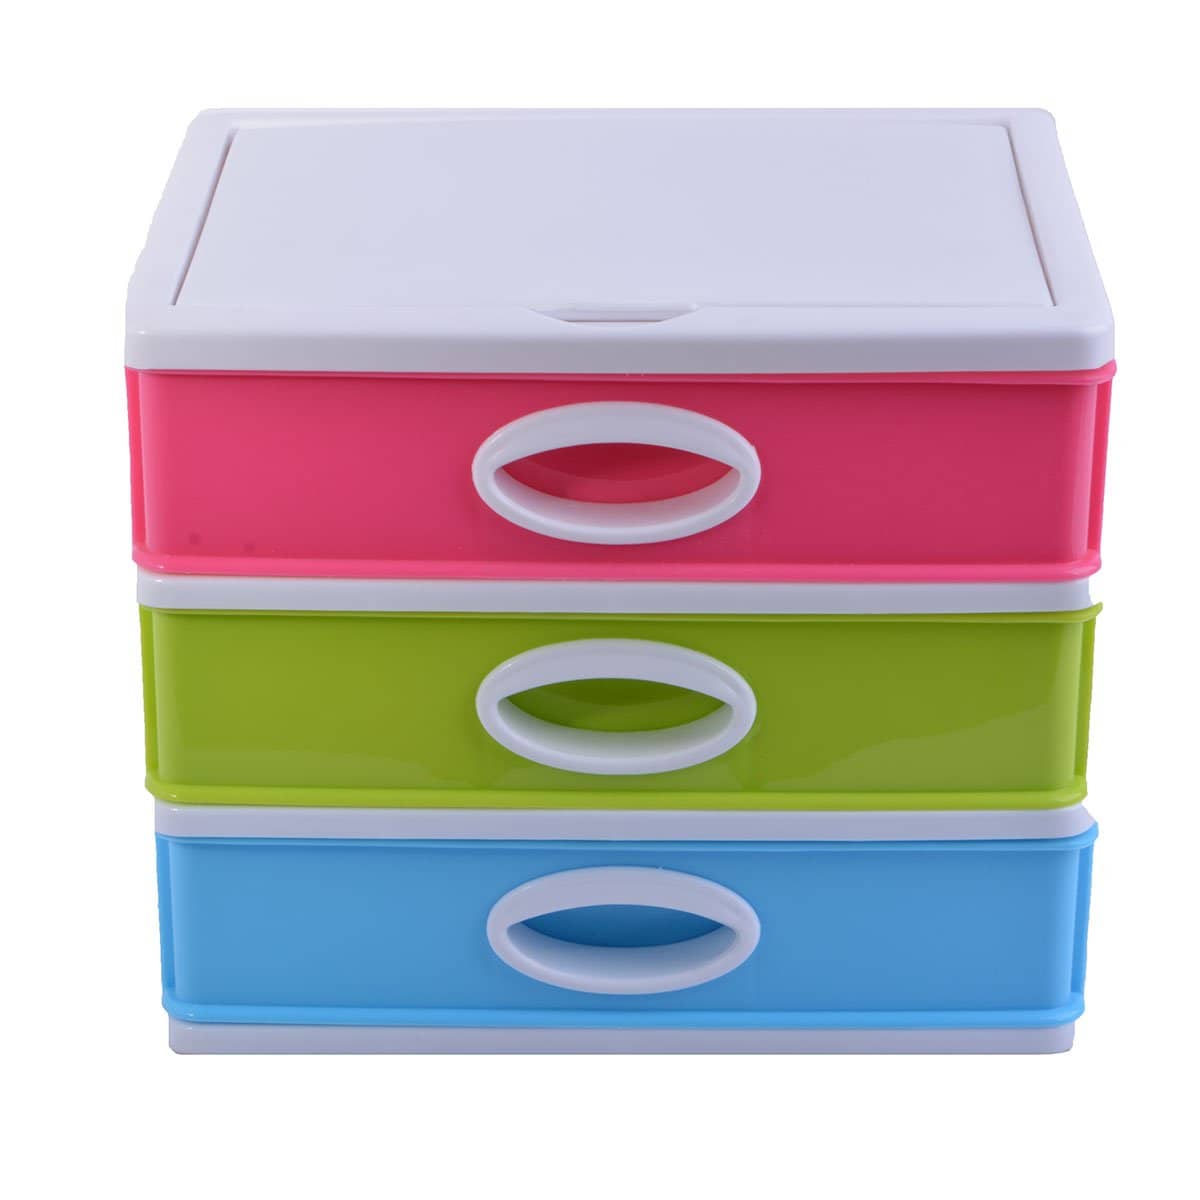 صندوق تخزين بلاستيكي صغير مع 3 أدراج ألوان متعددة - أنية المنزل